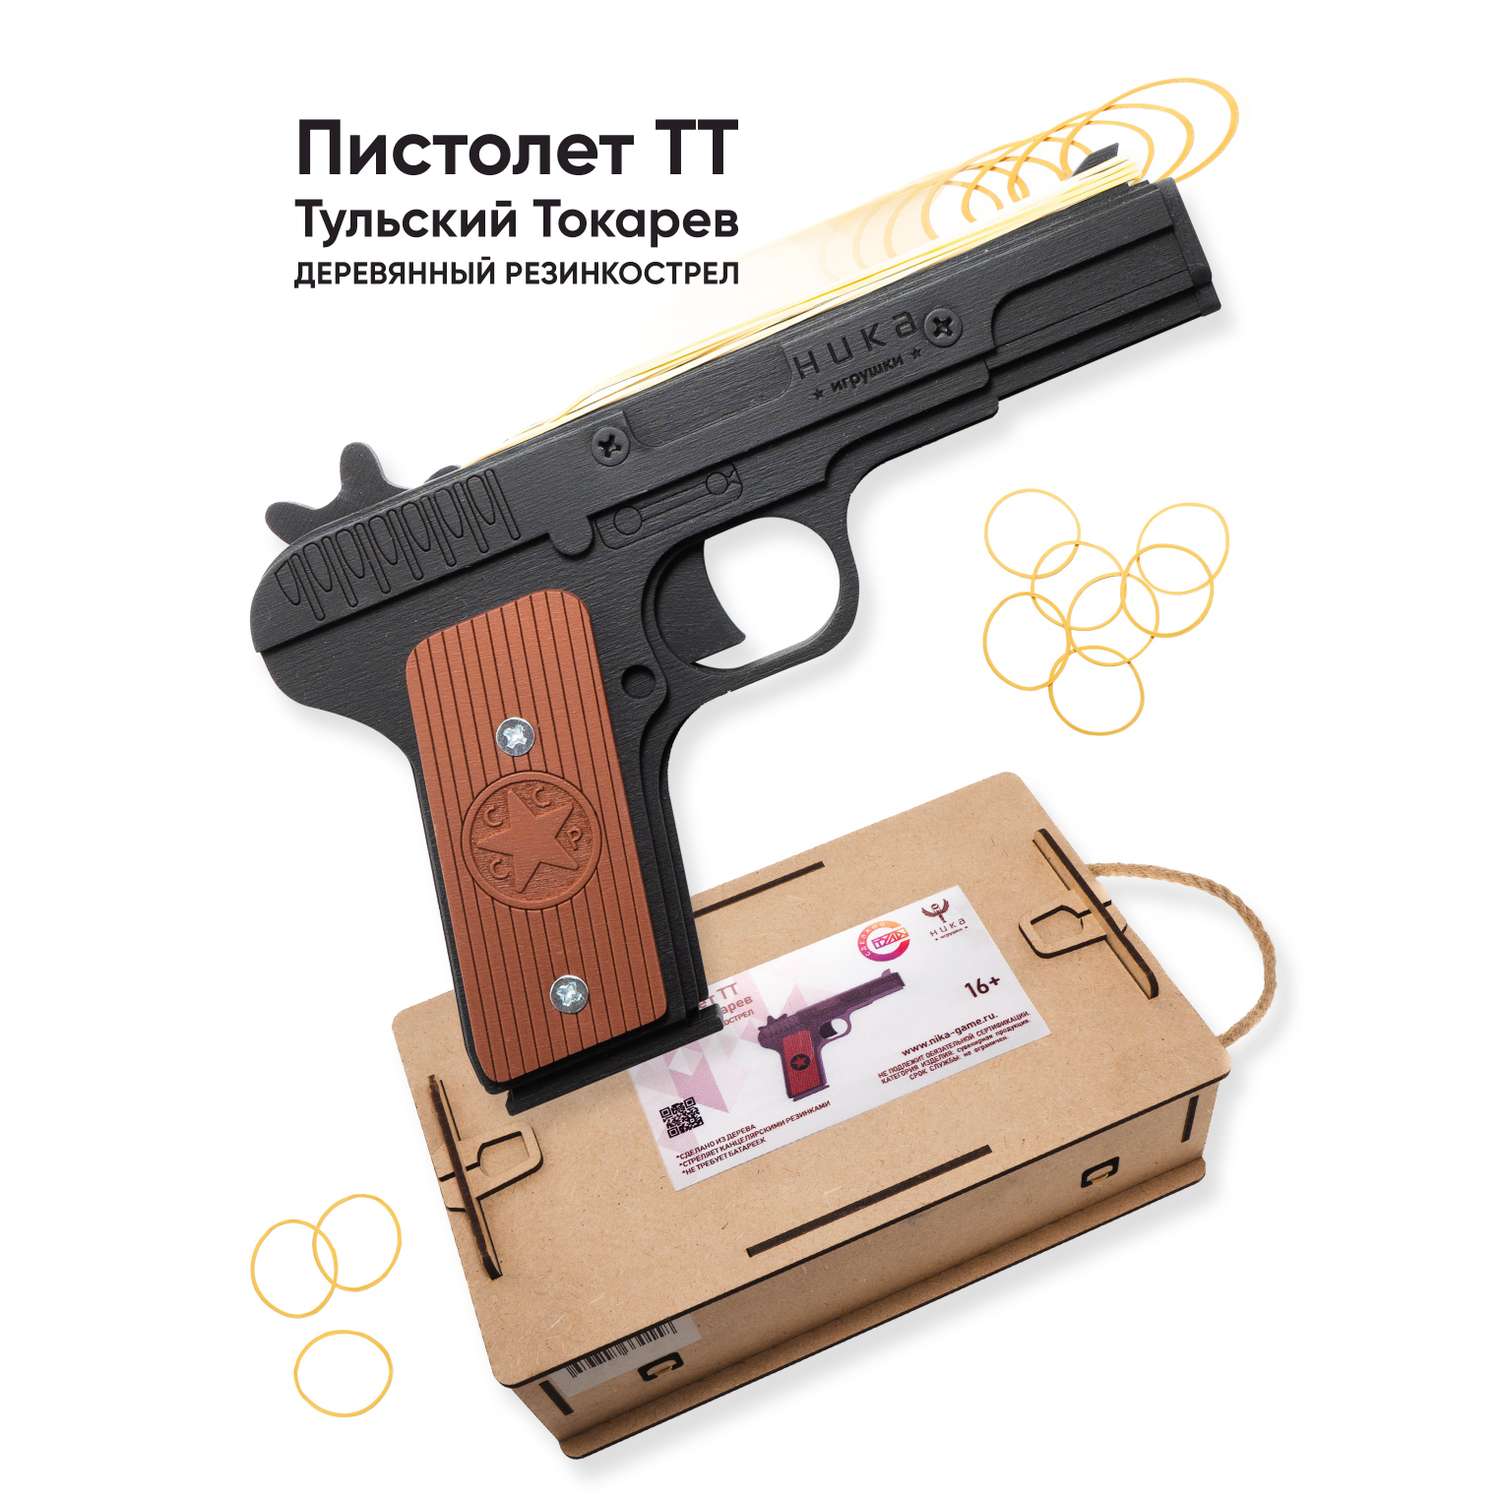 Резинкострел НИКА игрушки Пистолет ТТ в подарочной упаковке - фото 1